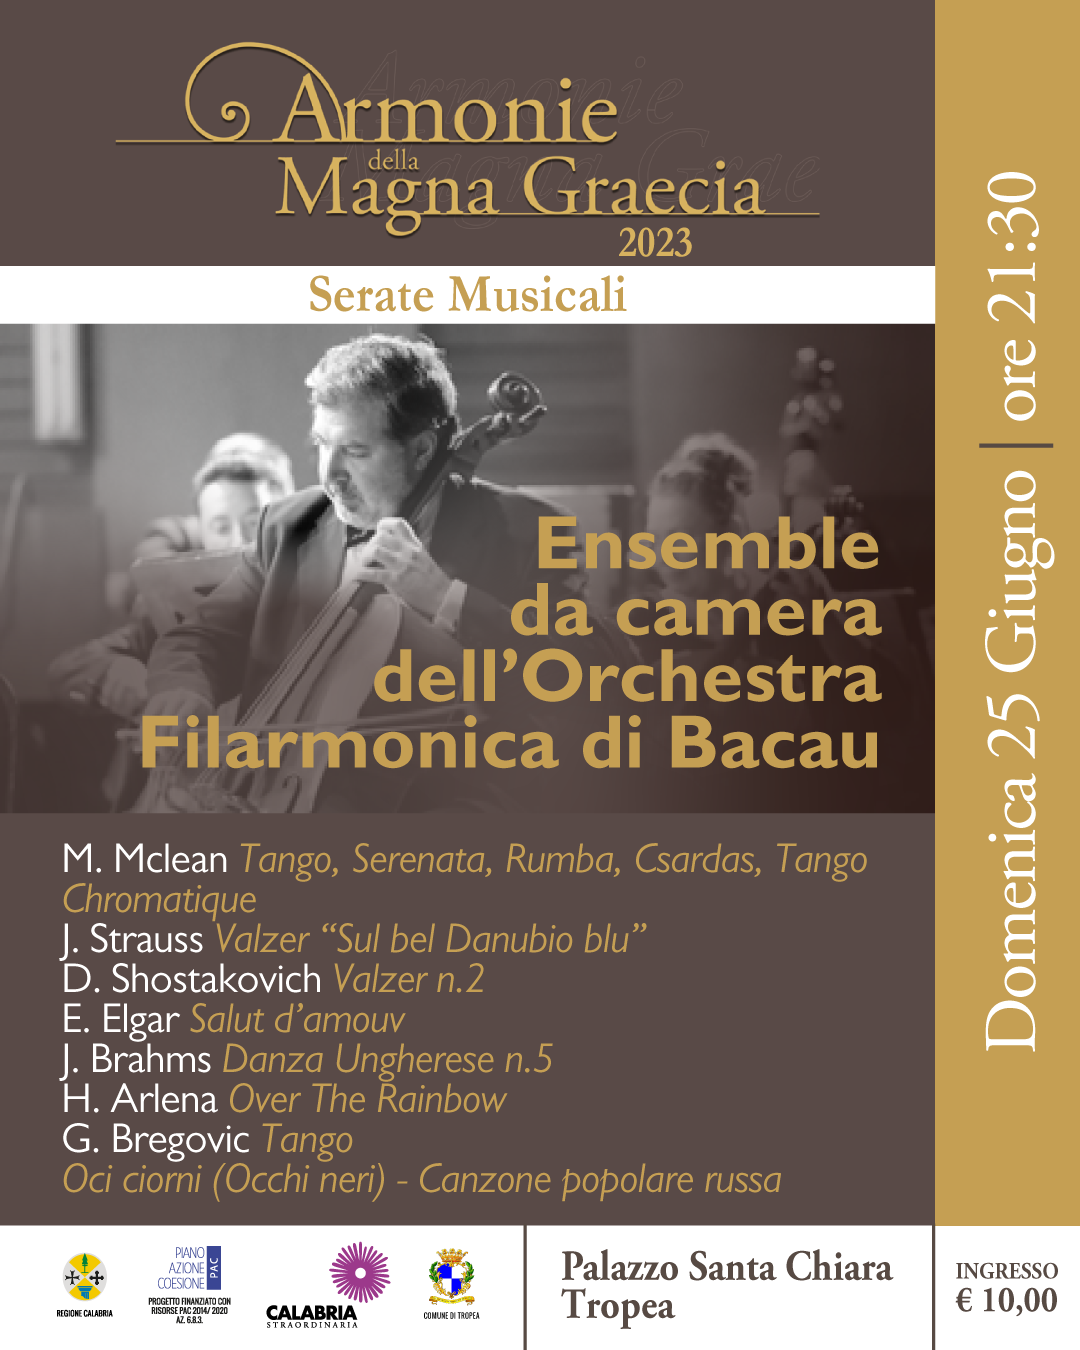 Ensemble da camera dell'Orchestra Filarmonica di Bacau (Romania)